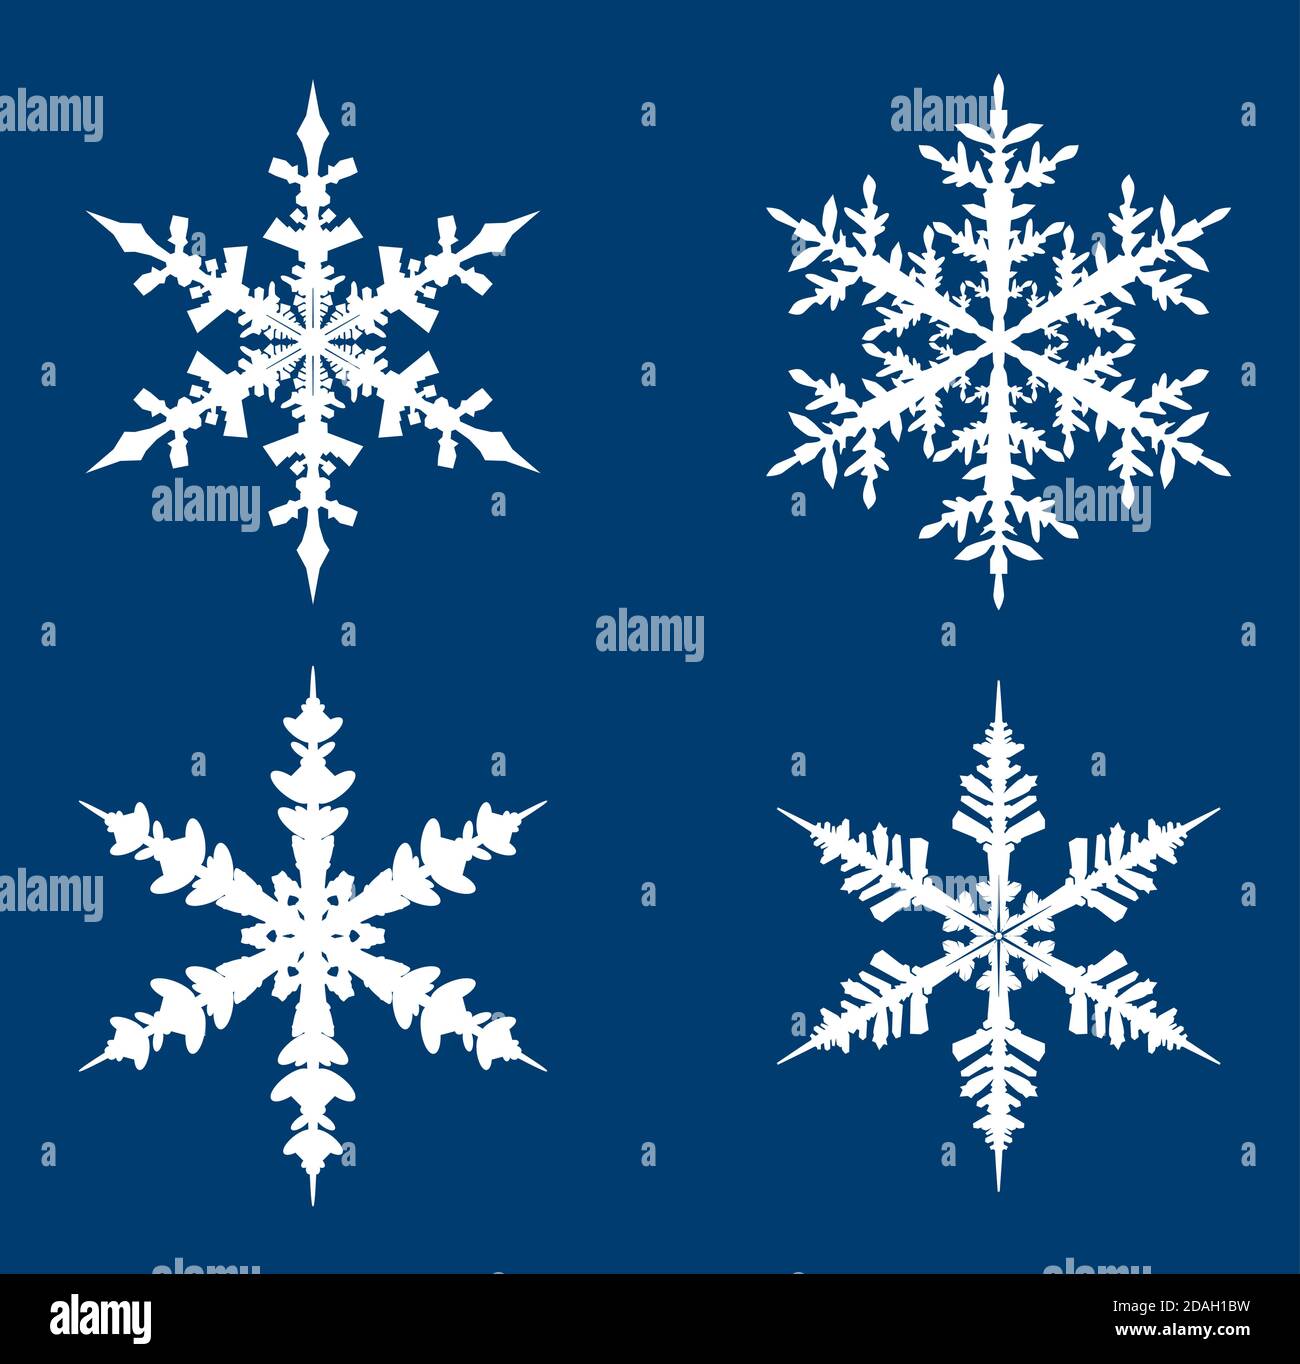 Sammlung von weißen Schneeflocken auf blauem Hintergrund. Vektorgrafik Stock Vektor